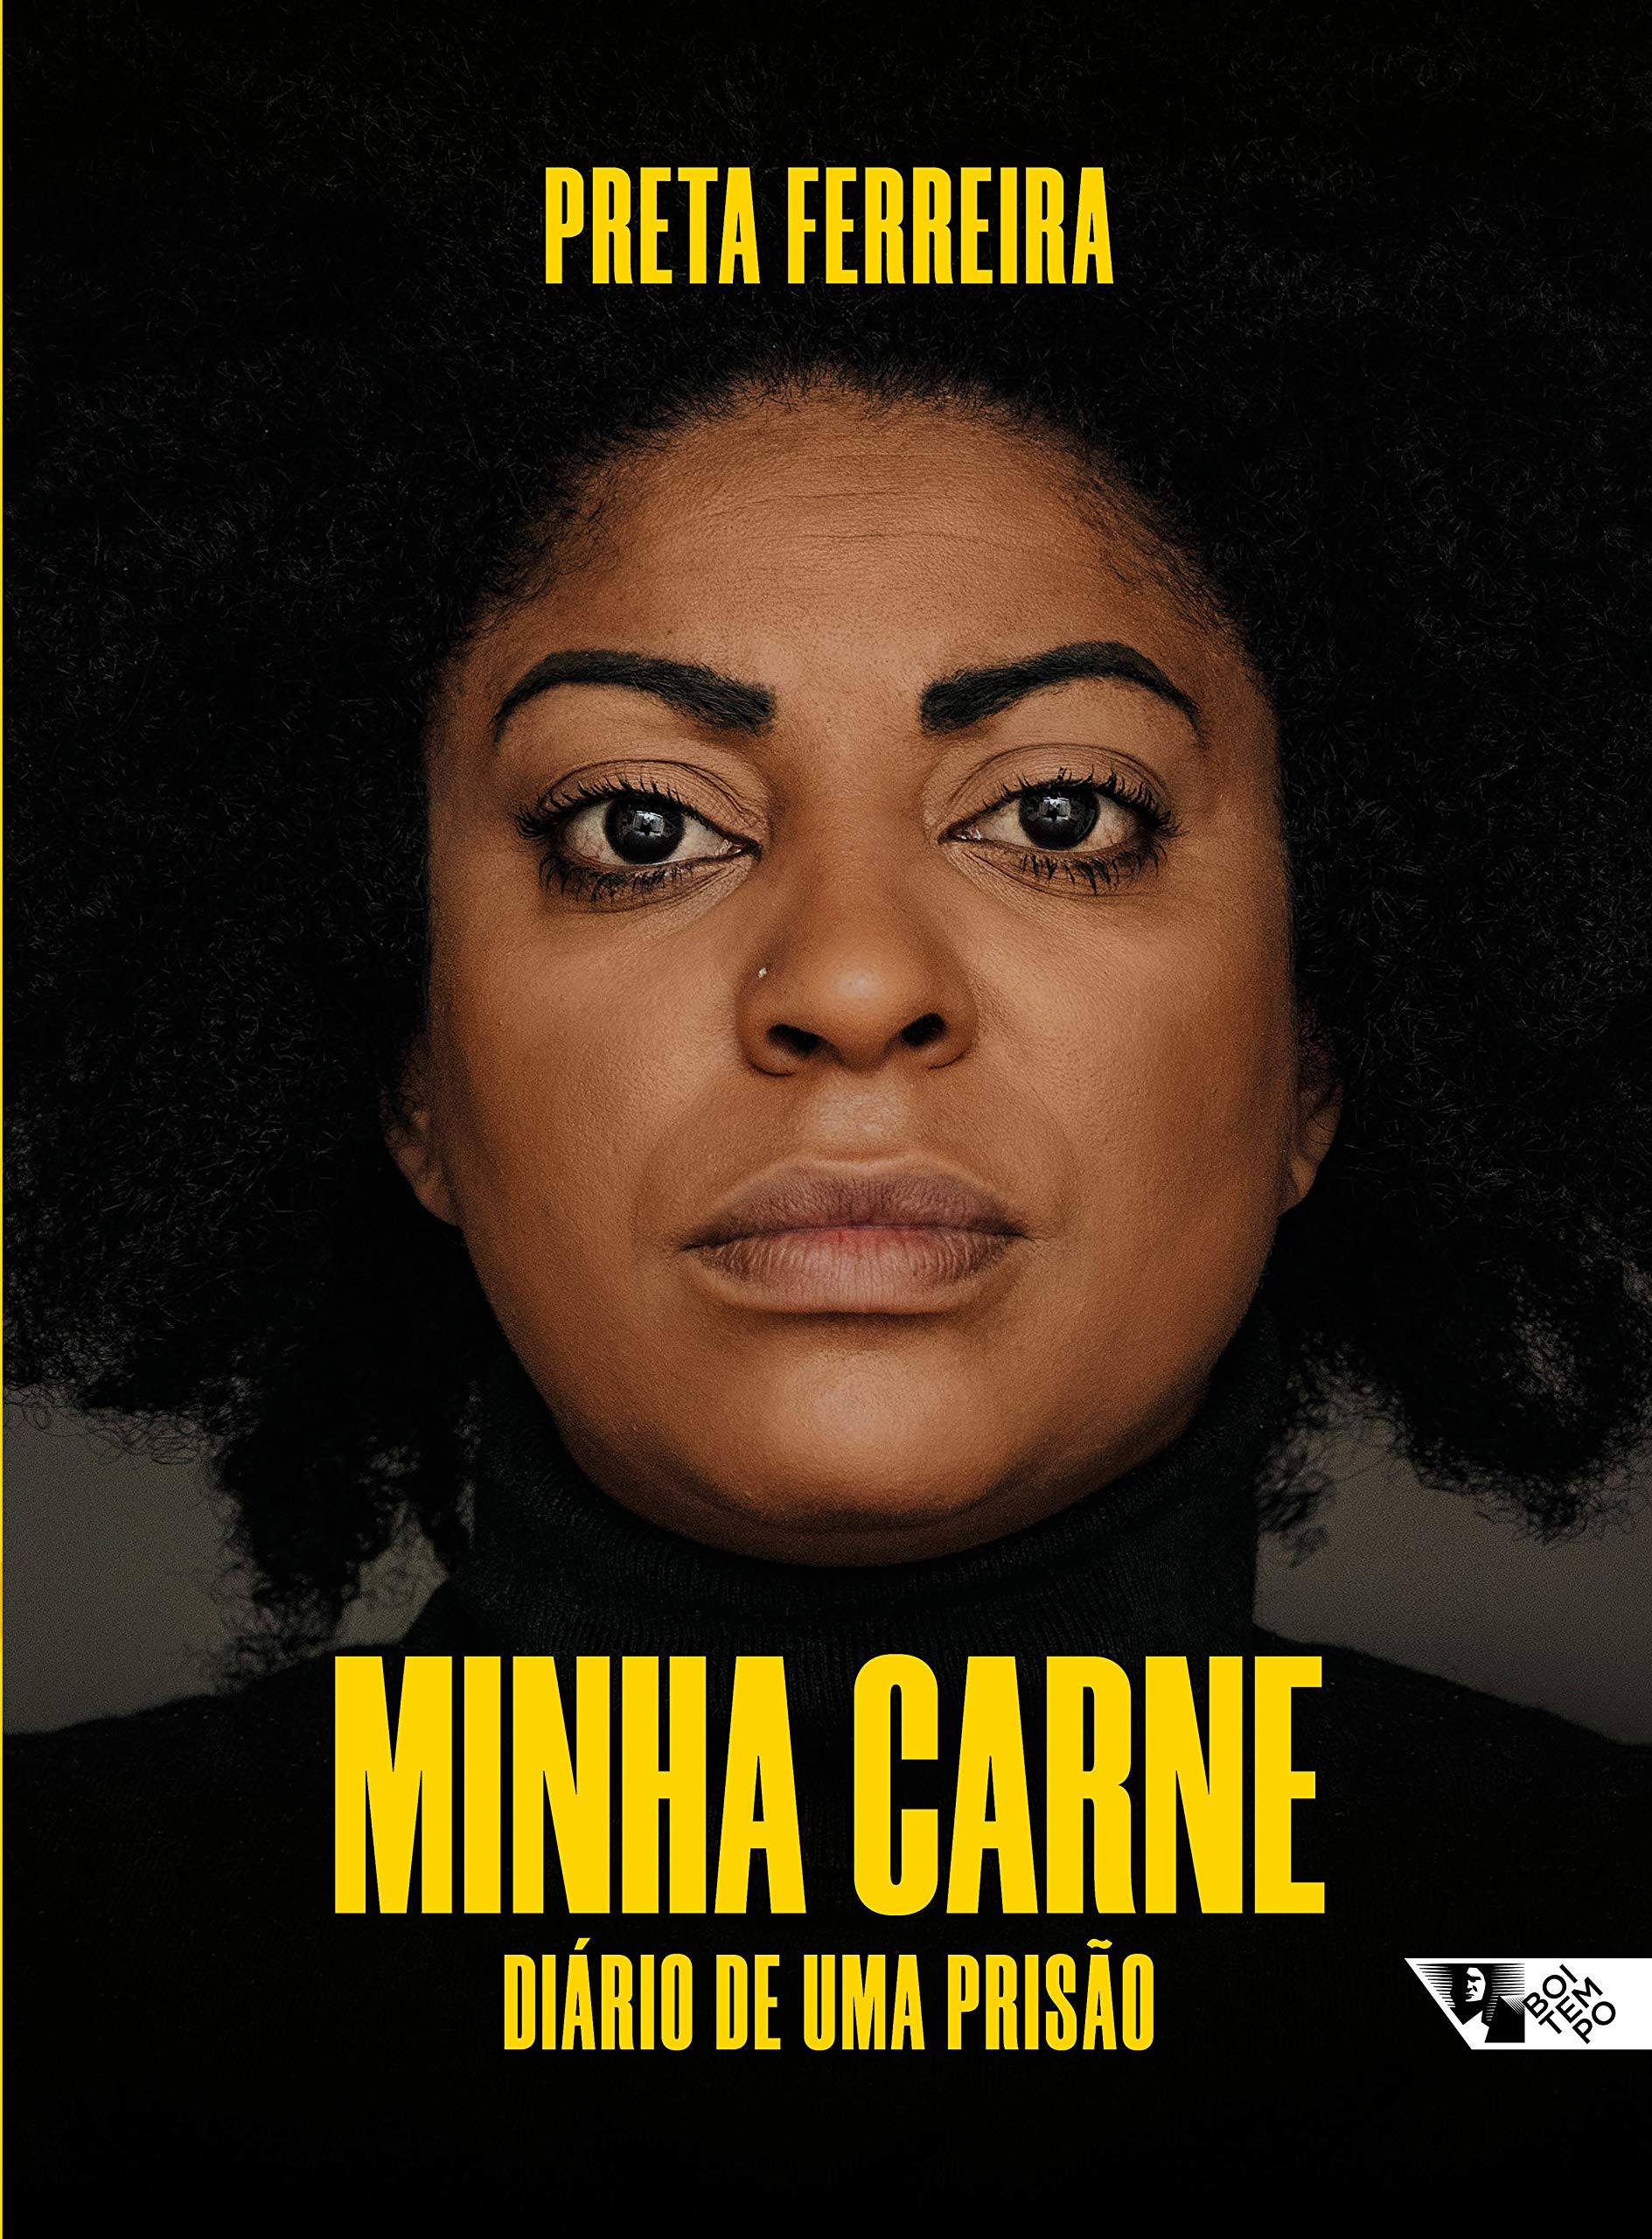 Livro 'Minha carne: Diário de uma prisão' por Preta Ferreira